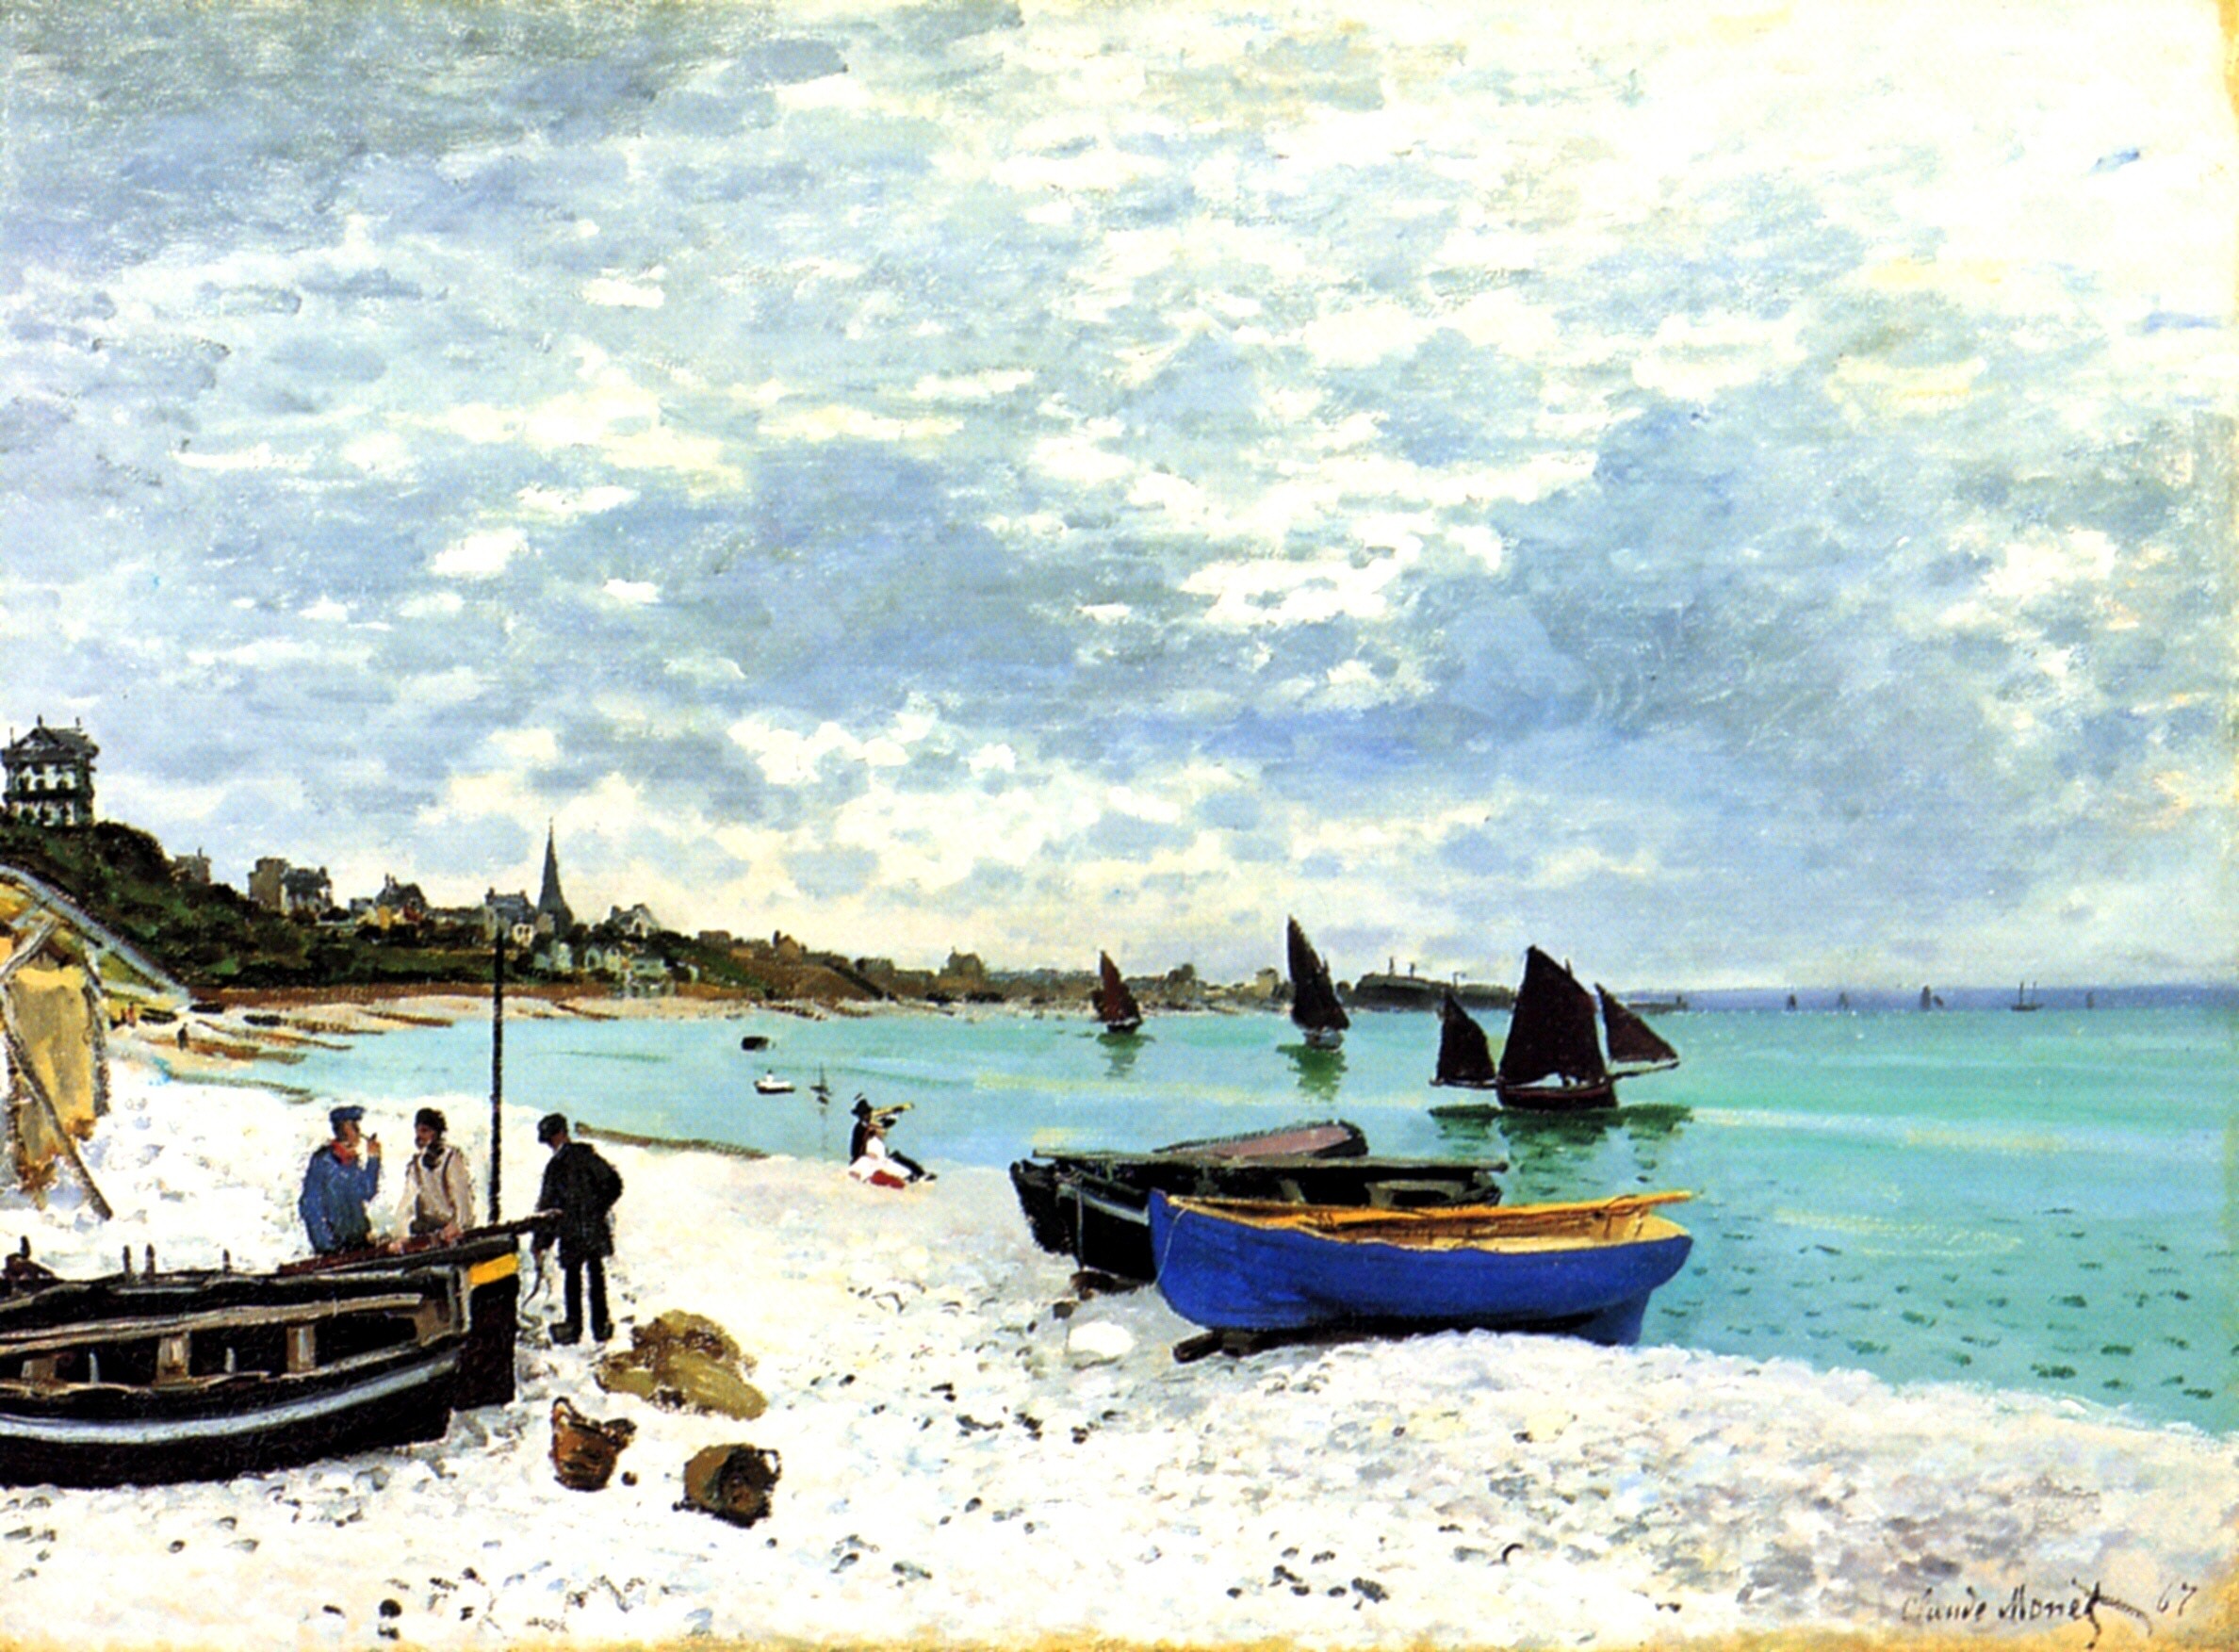 圣海滩风景 (The Beach at Sainte-Adresse) by 克劳德· 莫奈 - 1867 - 75.8 x 102.5 cm 芝加哥藝術博物館